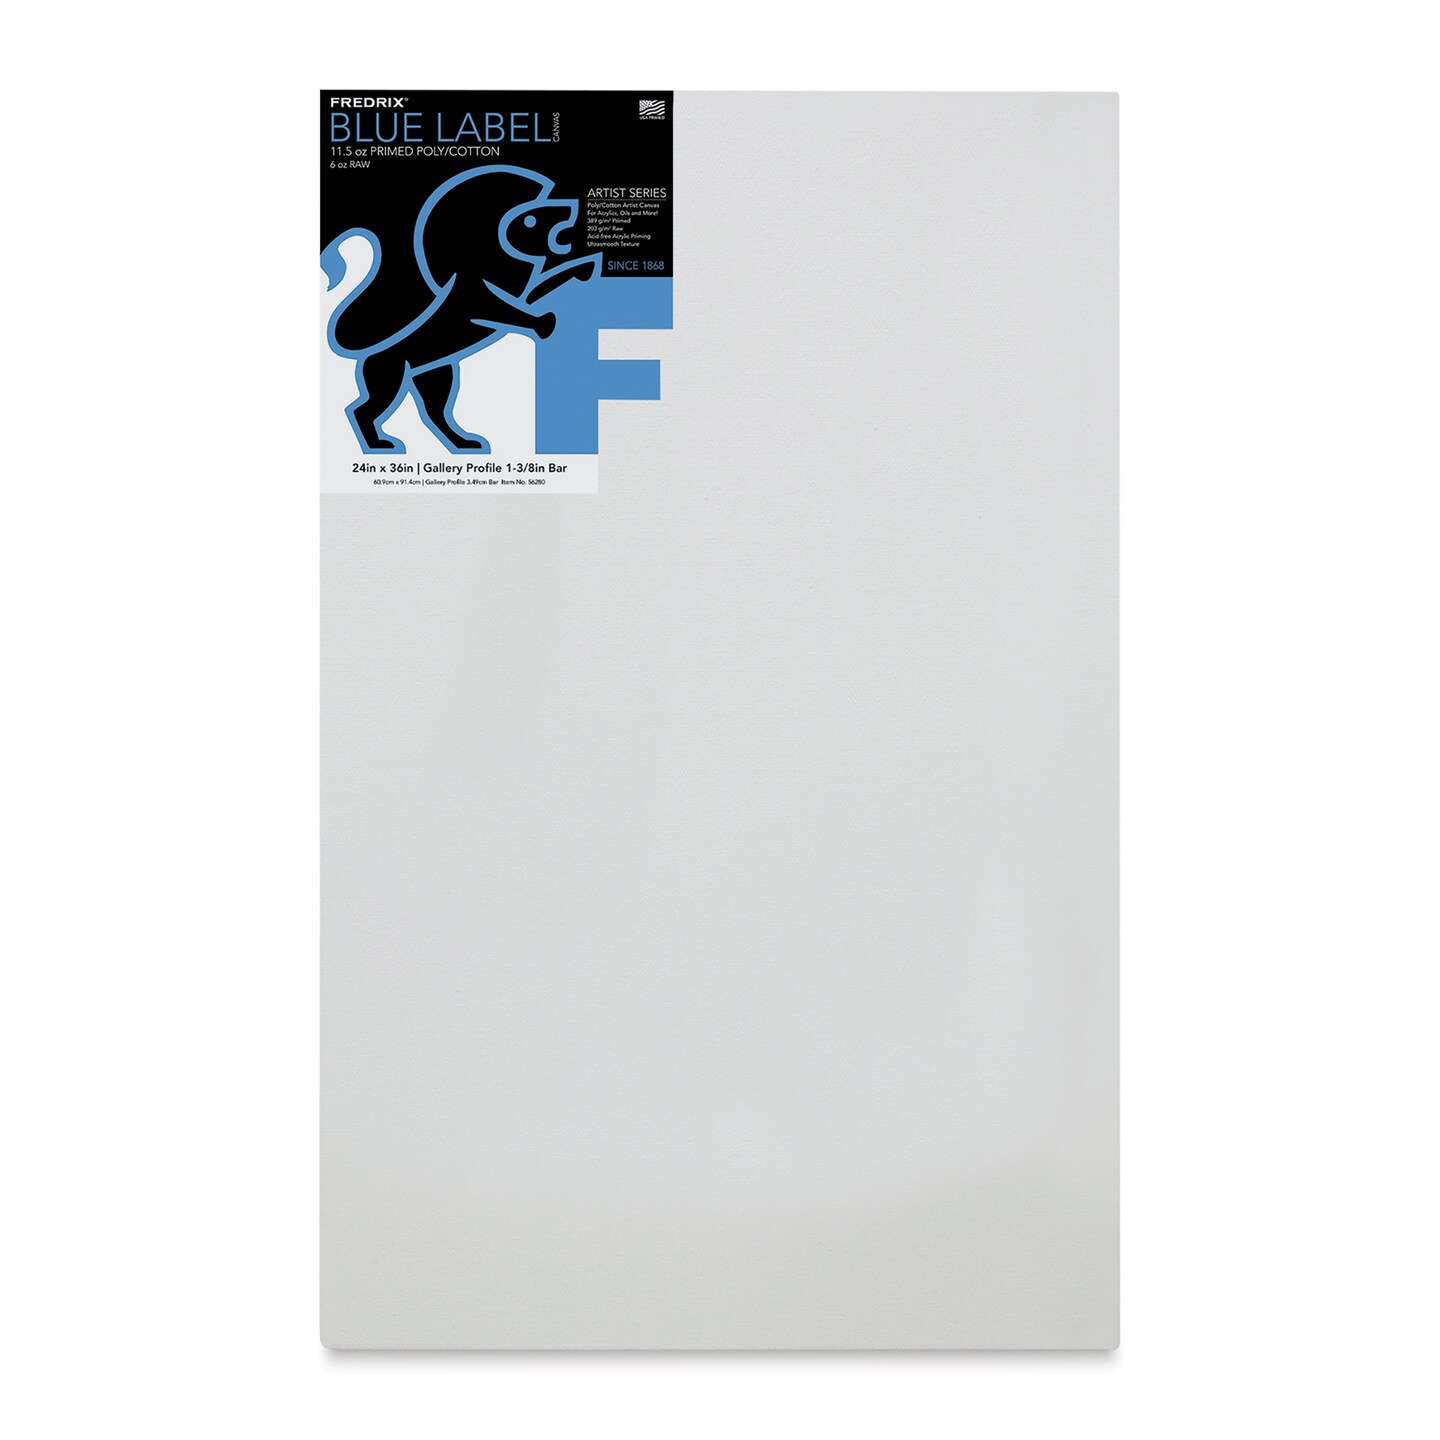 Fredrix Blue Label Cotton Canvas - 24&#x22; x 36&#x22;, Gallery Profile 1-3/8&#x22;